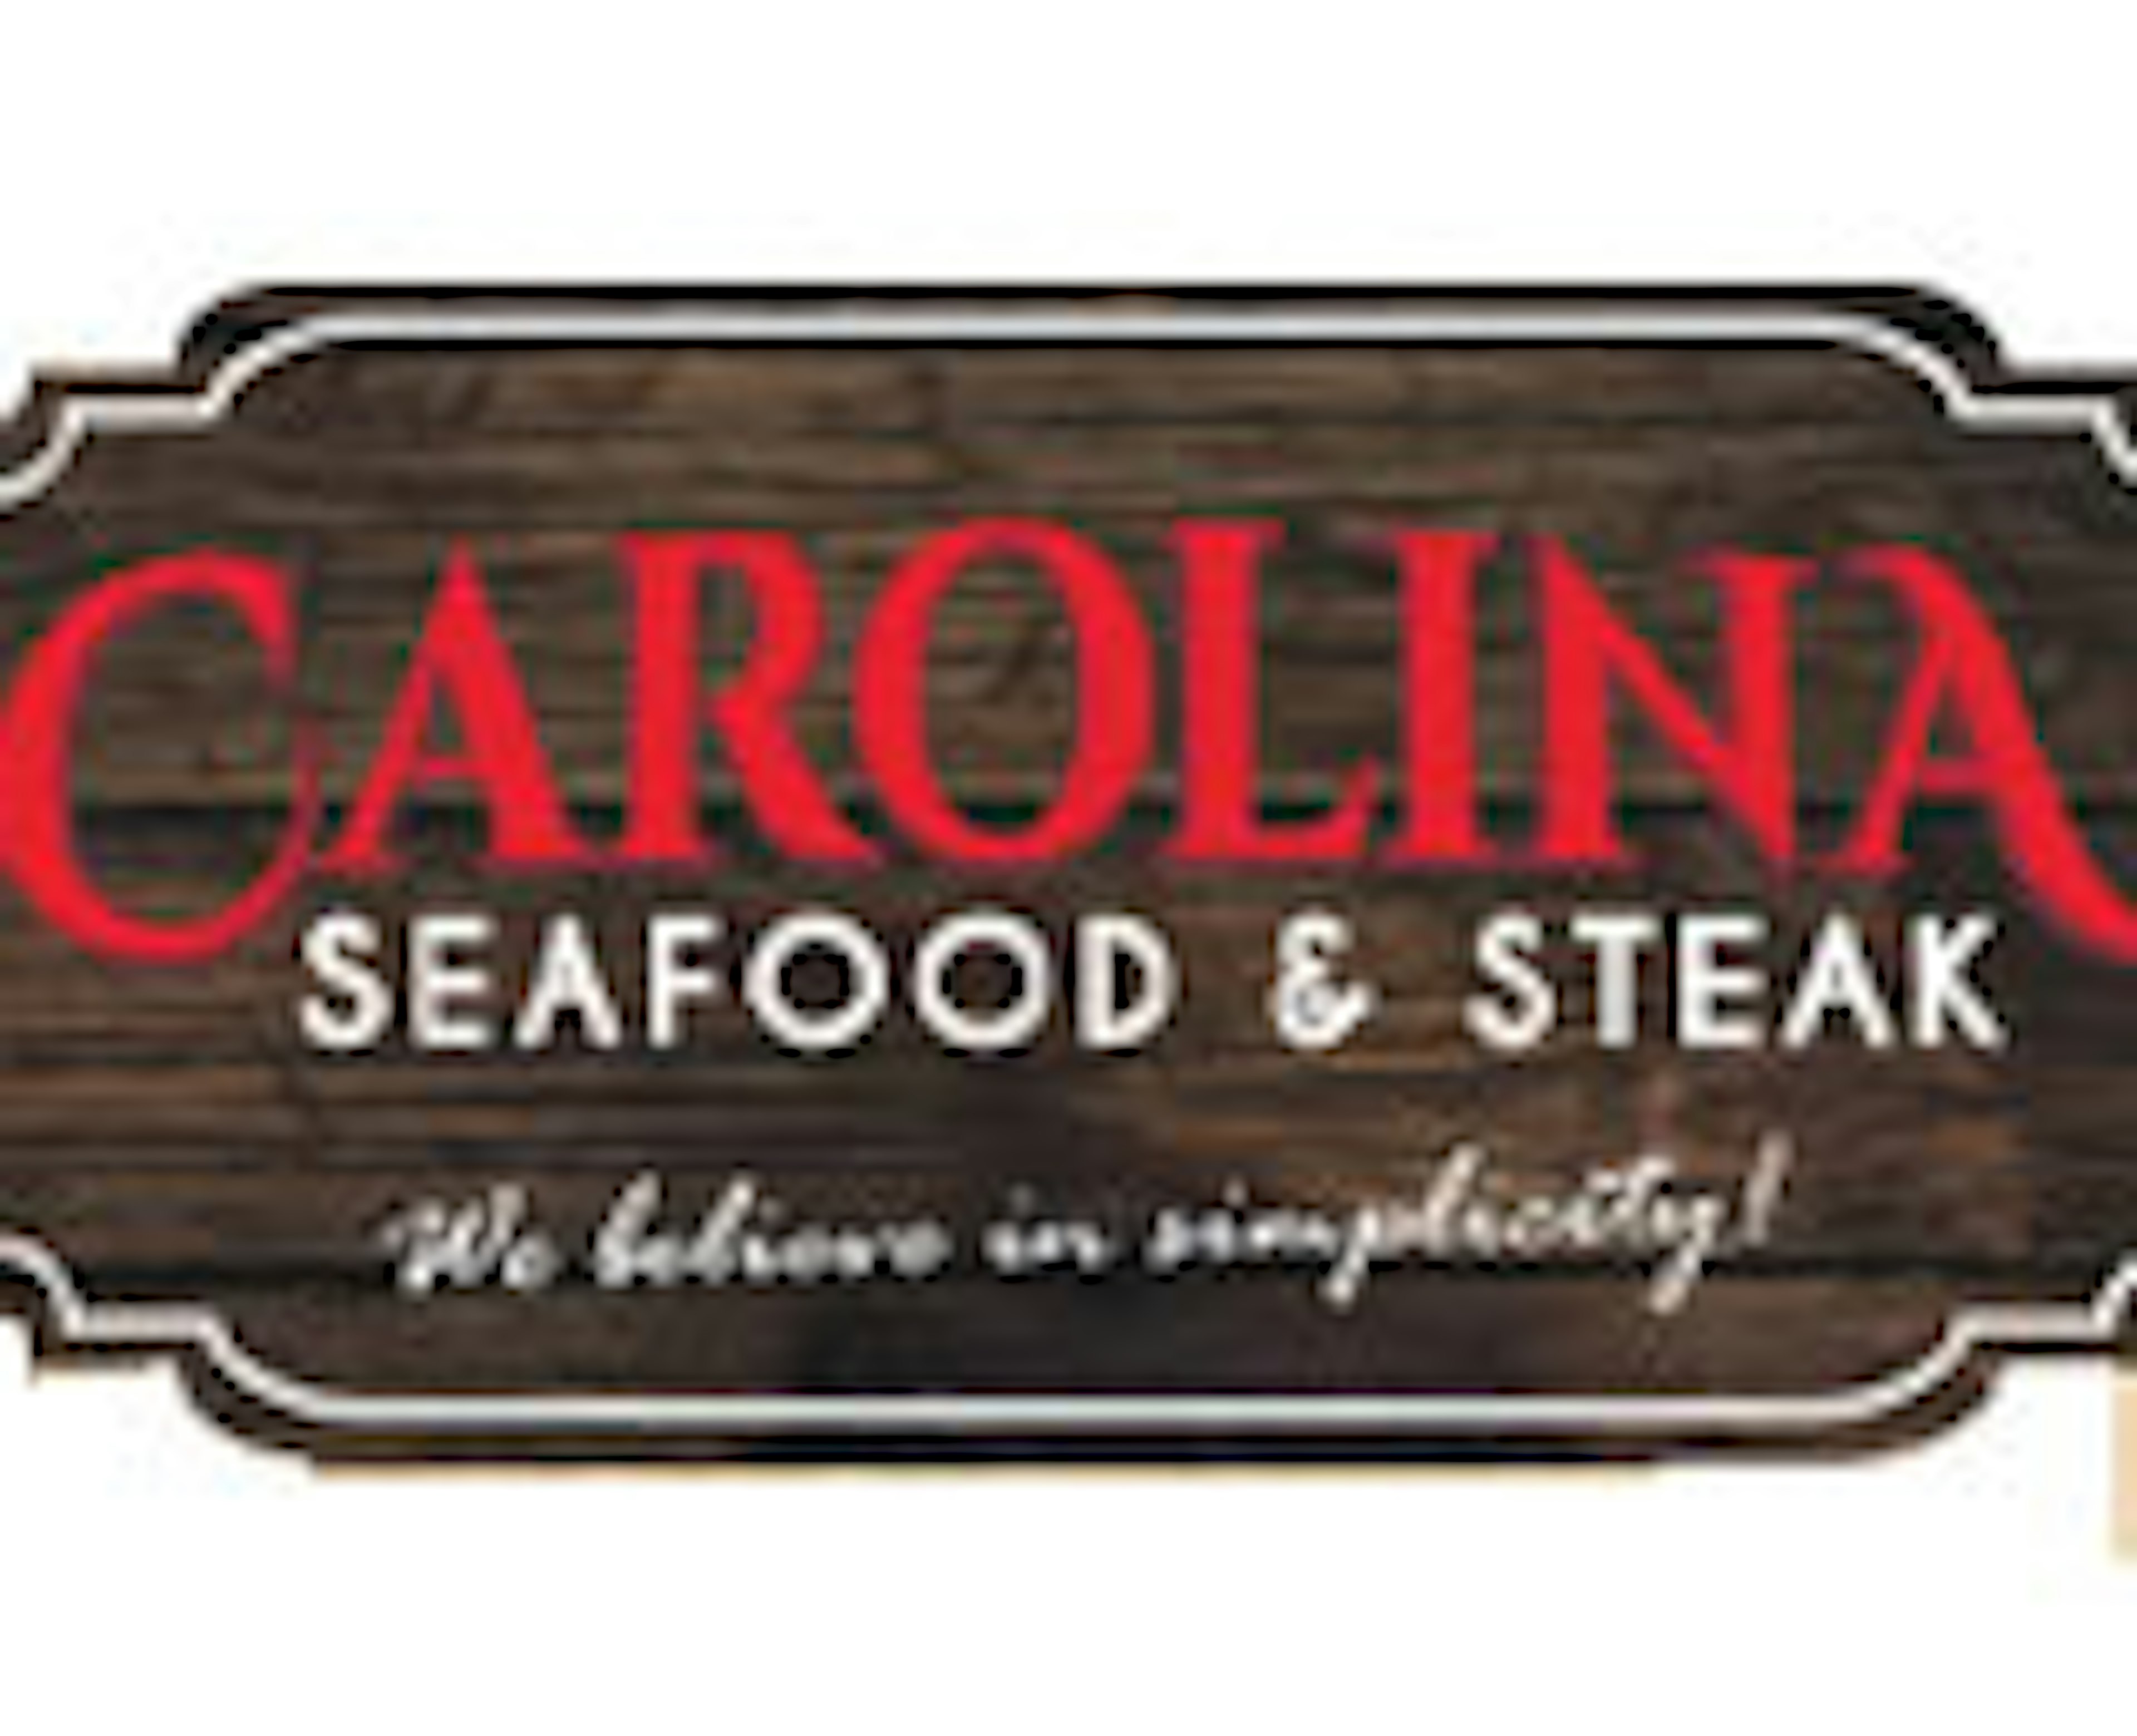 Carolina Seafood & Steak